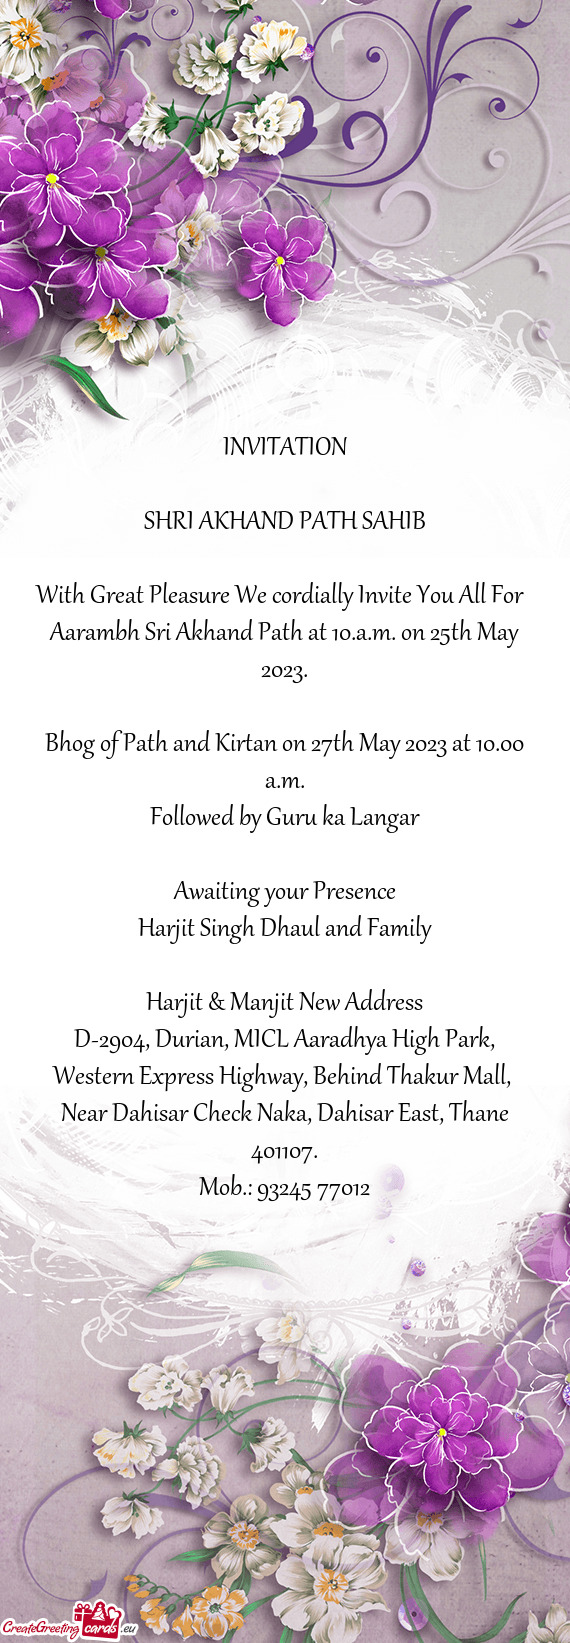 Aarambh Sri Akhand Path at 10.a.m. on 25th May 2023